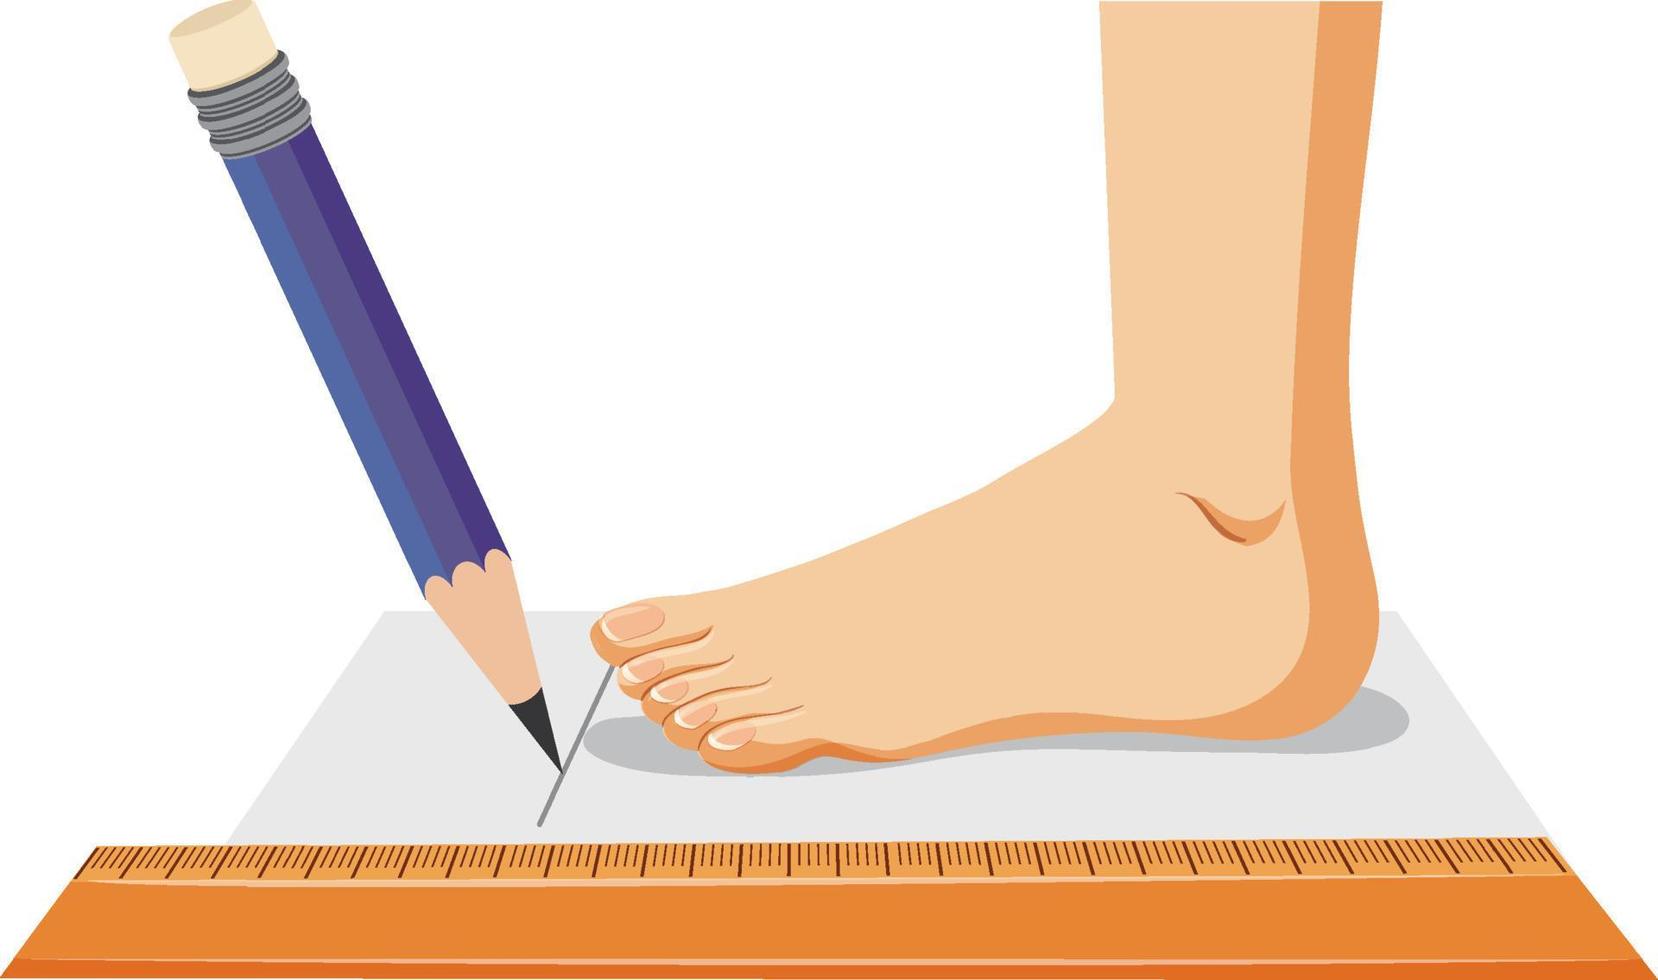 misurazione del vettore delle dimensioni del piede